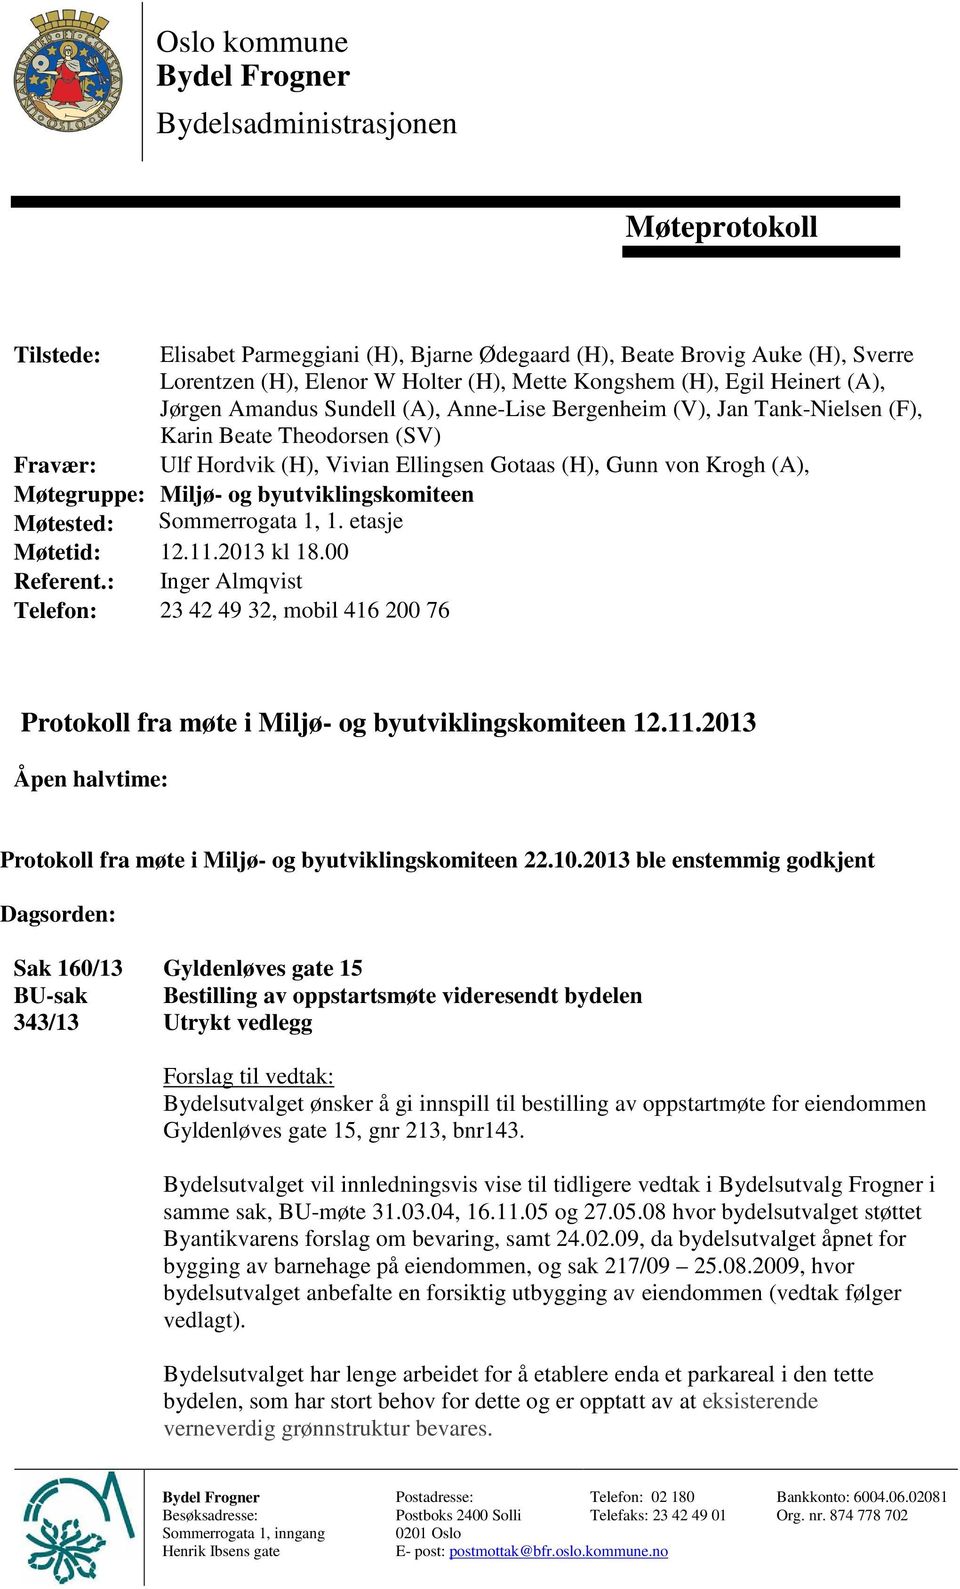 Krogh (A), Møtegruppe: Miljø- og byutviklingskomiteen Møtested: Sommerrogata 1, 1. etasje Møtetid: 12.11.2013 kl 18.00 Referent.